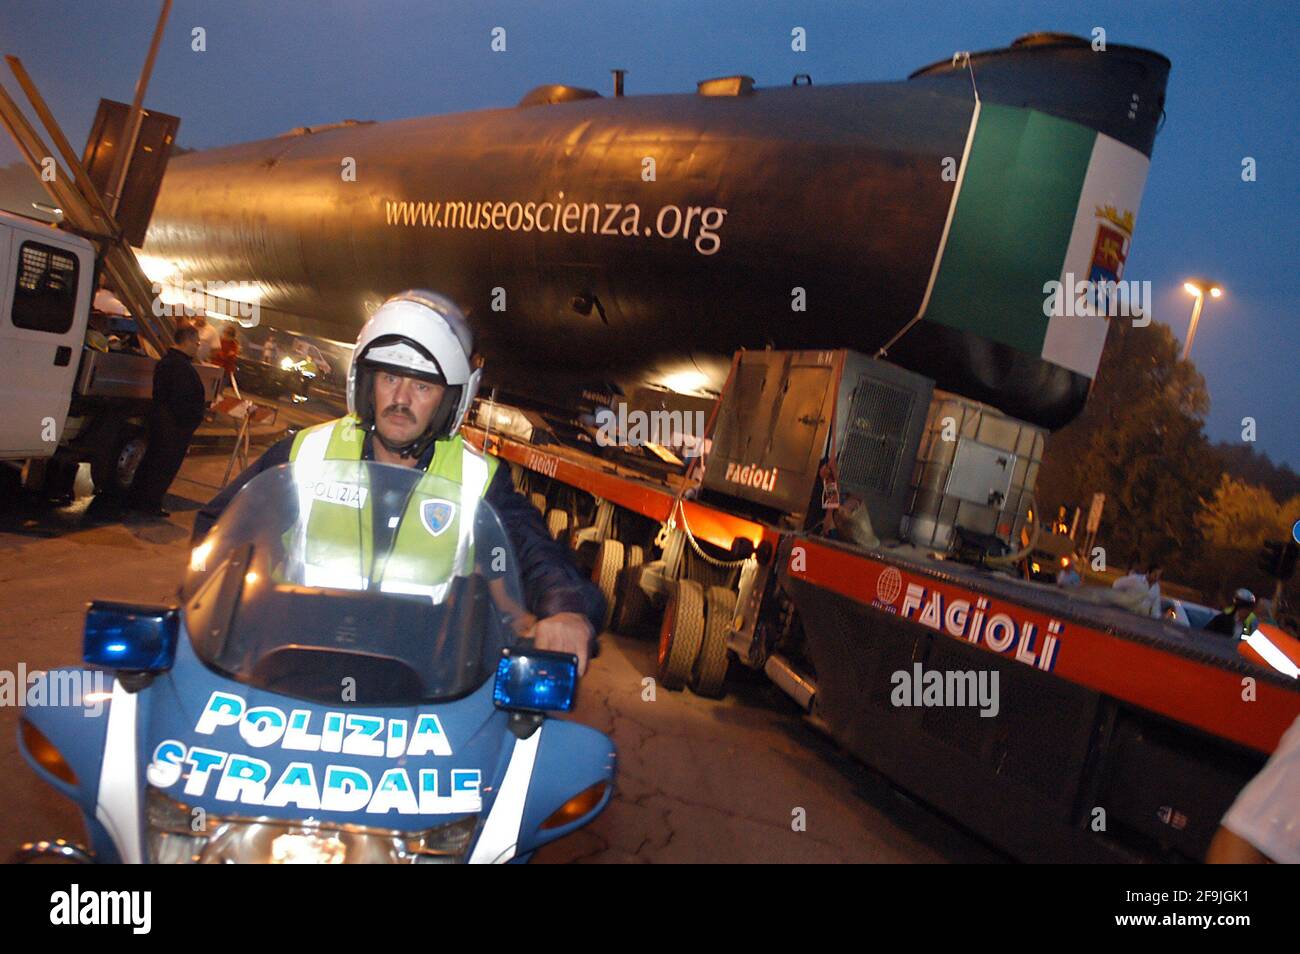 Italia, agosto 2005, sottomarino Enrico Toti, donato dalla Marina Italiana al Museo della Scienza e della tecnologia di Milano. Trasporto su strada dal porto fluviale di Cremona, sul fiume po, al sito museale milanese Foto Stock